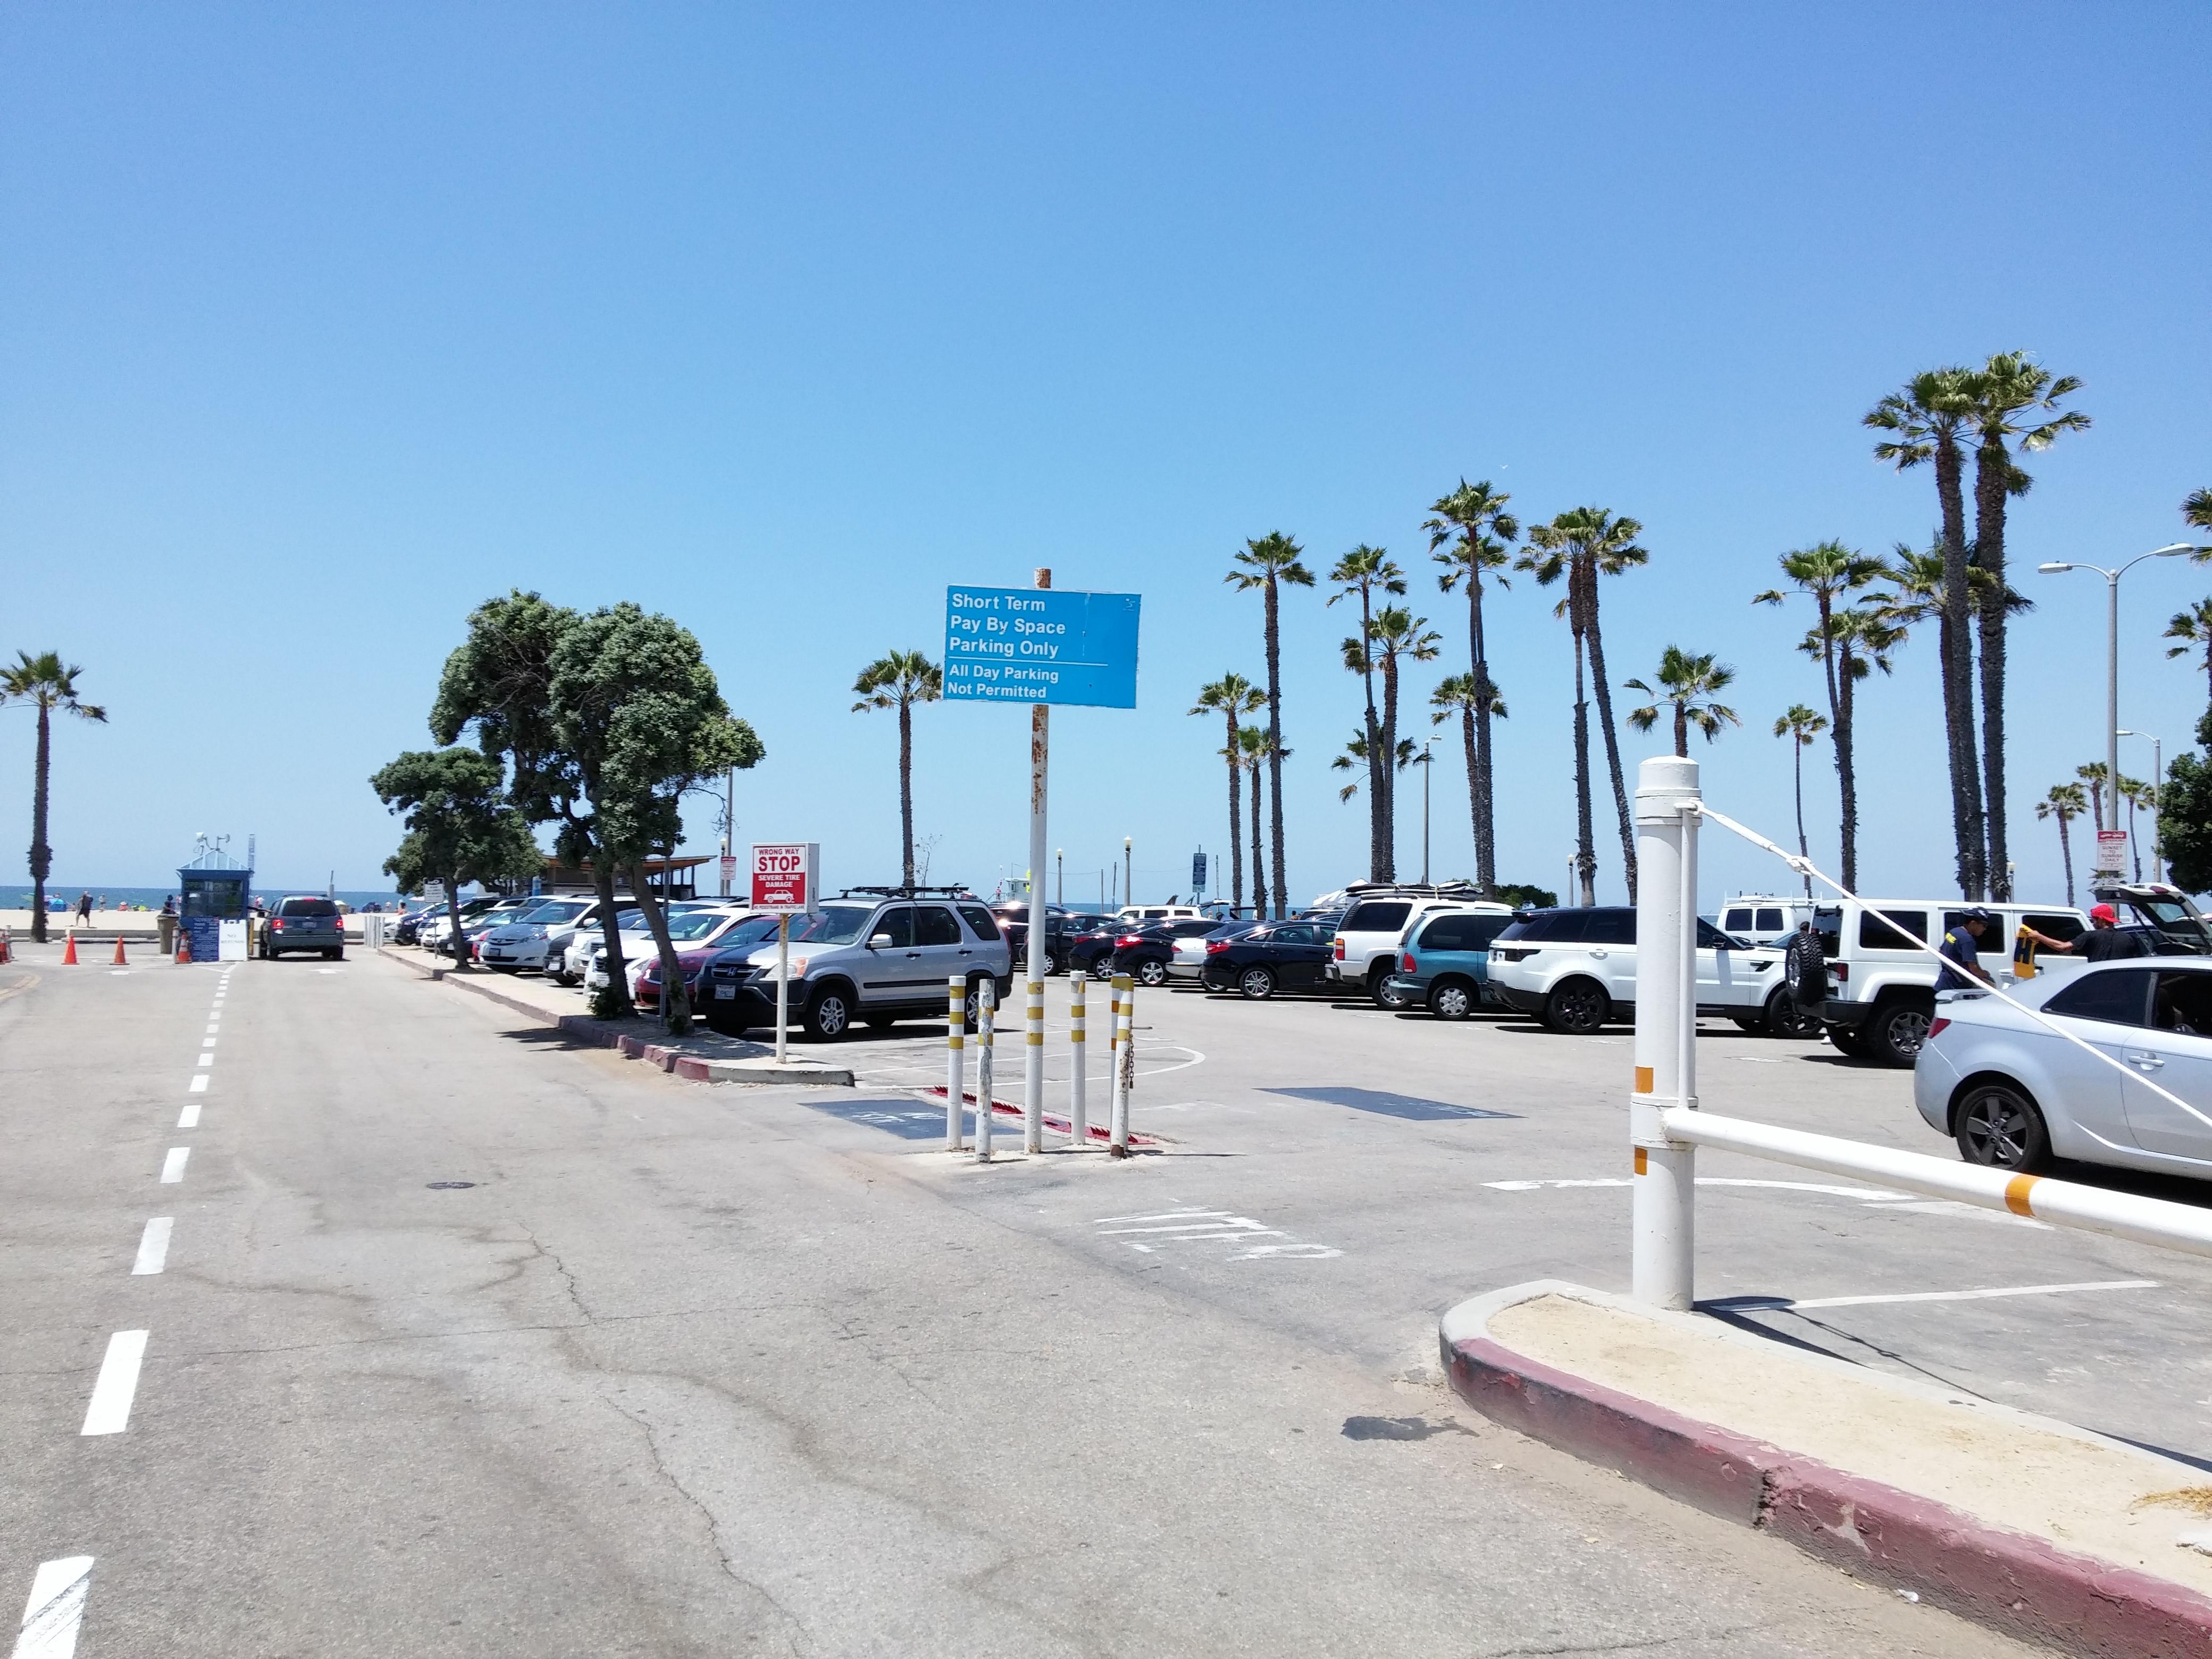 Lot 5 South - Parking in Santa Monica | ParkMe